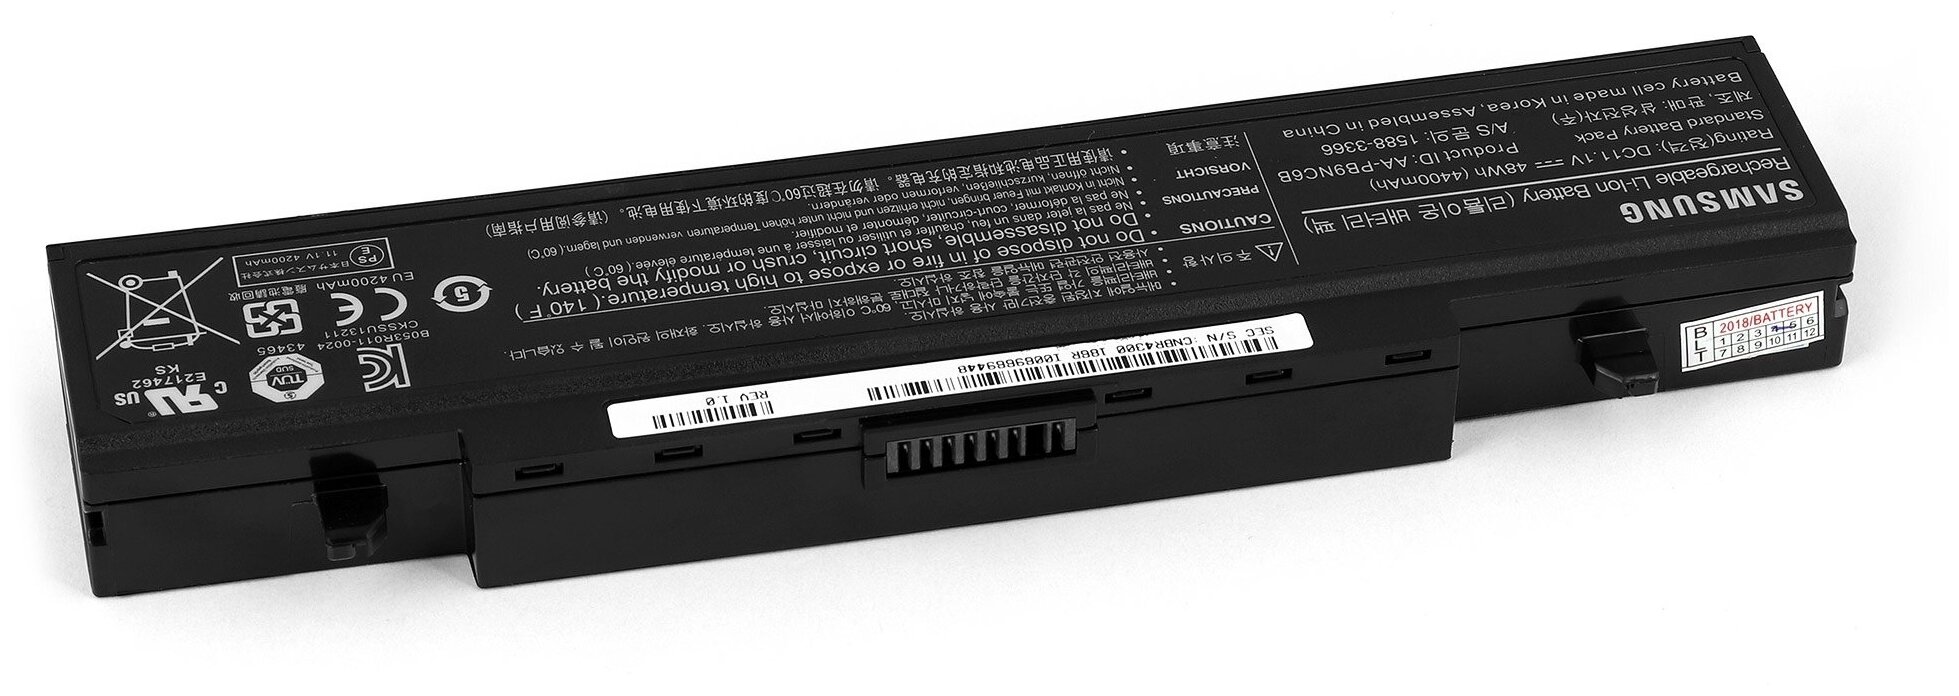 Аккумулятор для ноутбука Samsung R428, R425, R429, R430, R458, R467, R468, R478, R480, R505 Series. 11.1V 4400mAh PN: AA-PB9NS6W, PB9NC5B